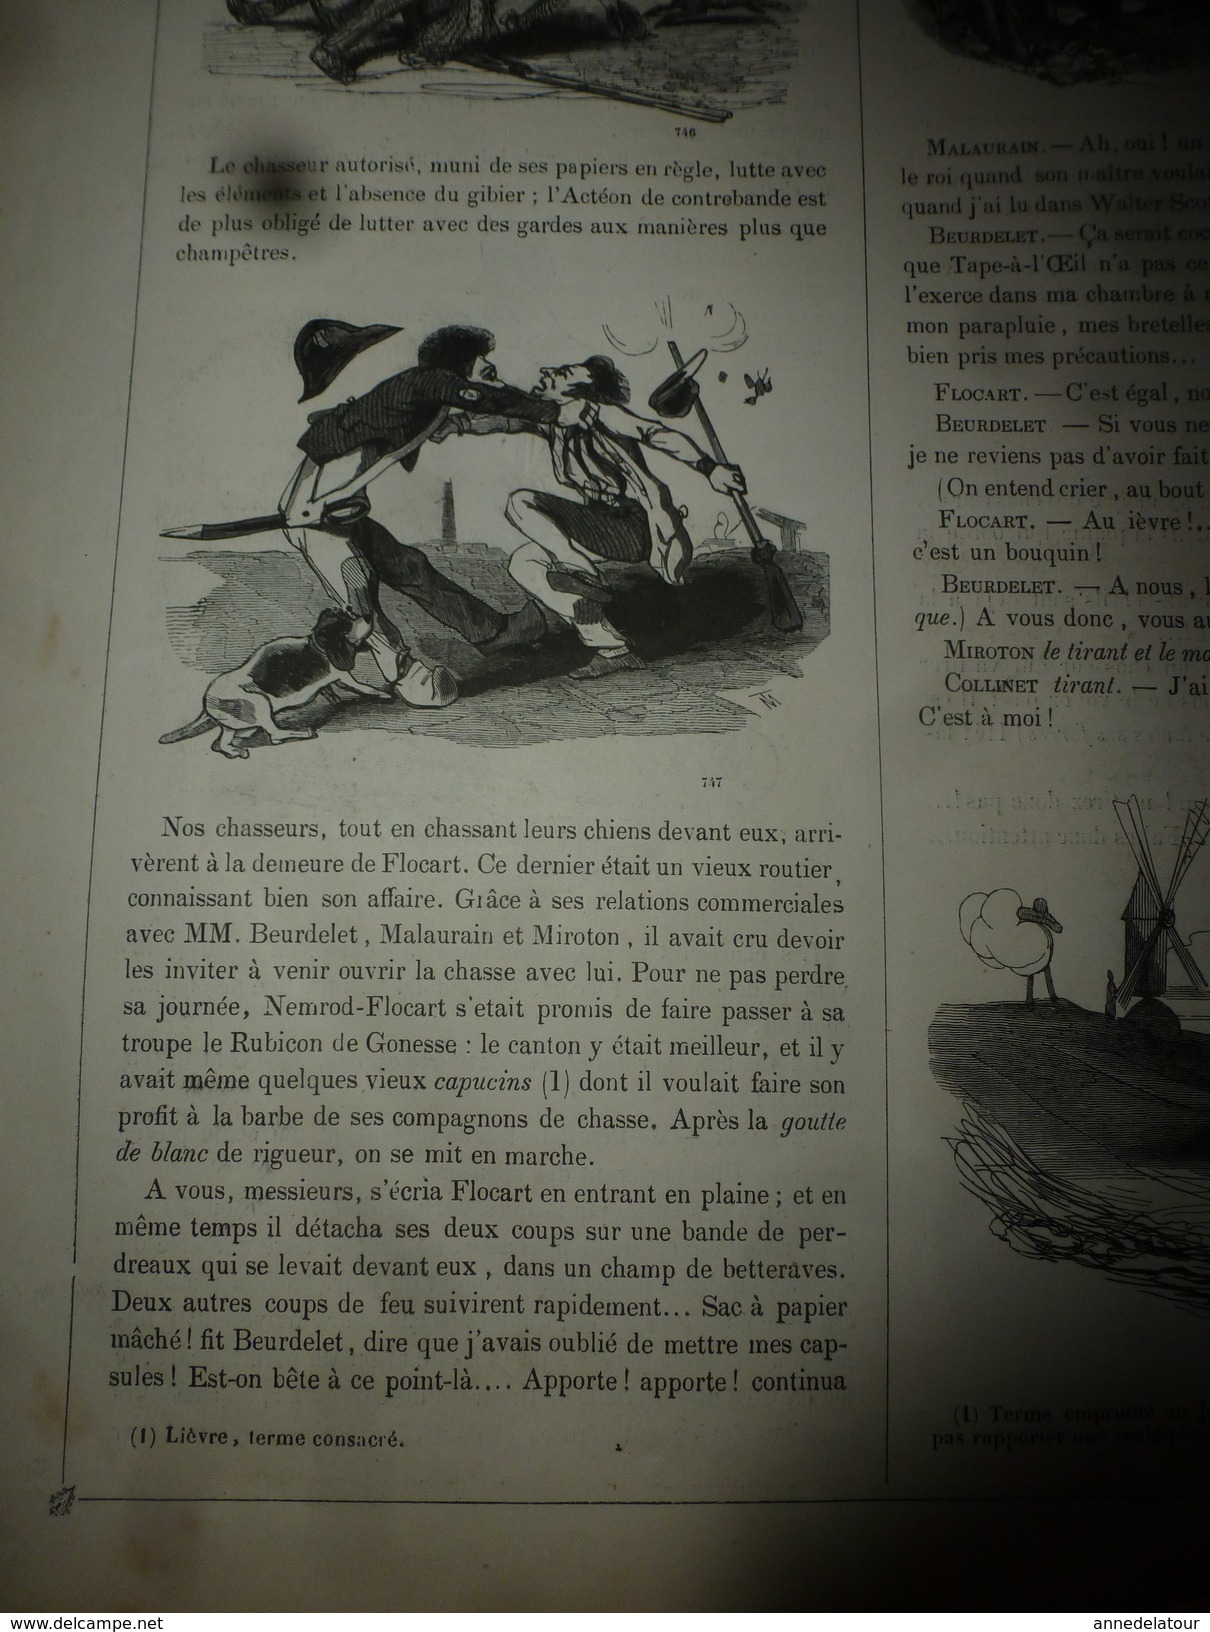 1840 LES CHASSEURS parisiens,par E.Bourget -dessins de Cham;METAMORPHOSE par Granville, bois de Forest - MUSEE PHILIPON